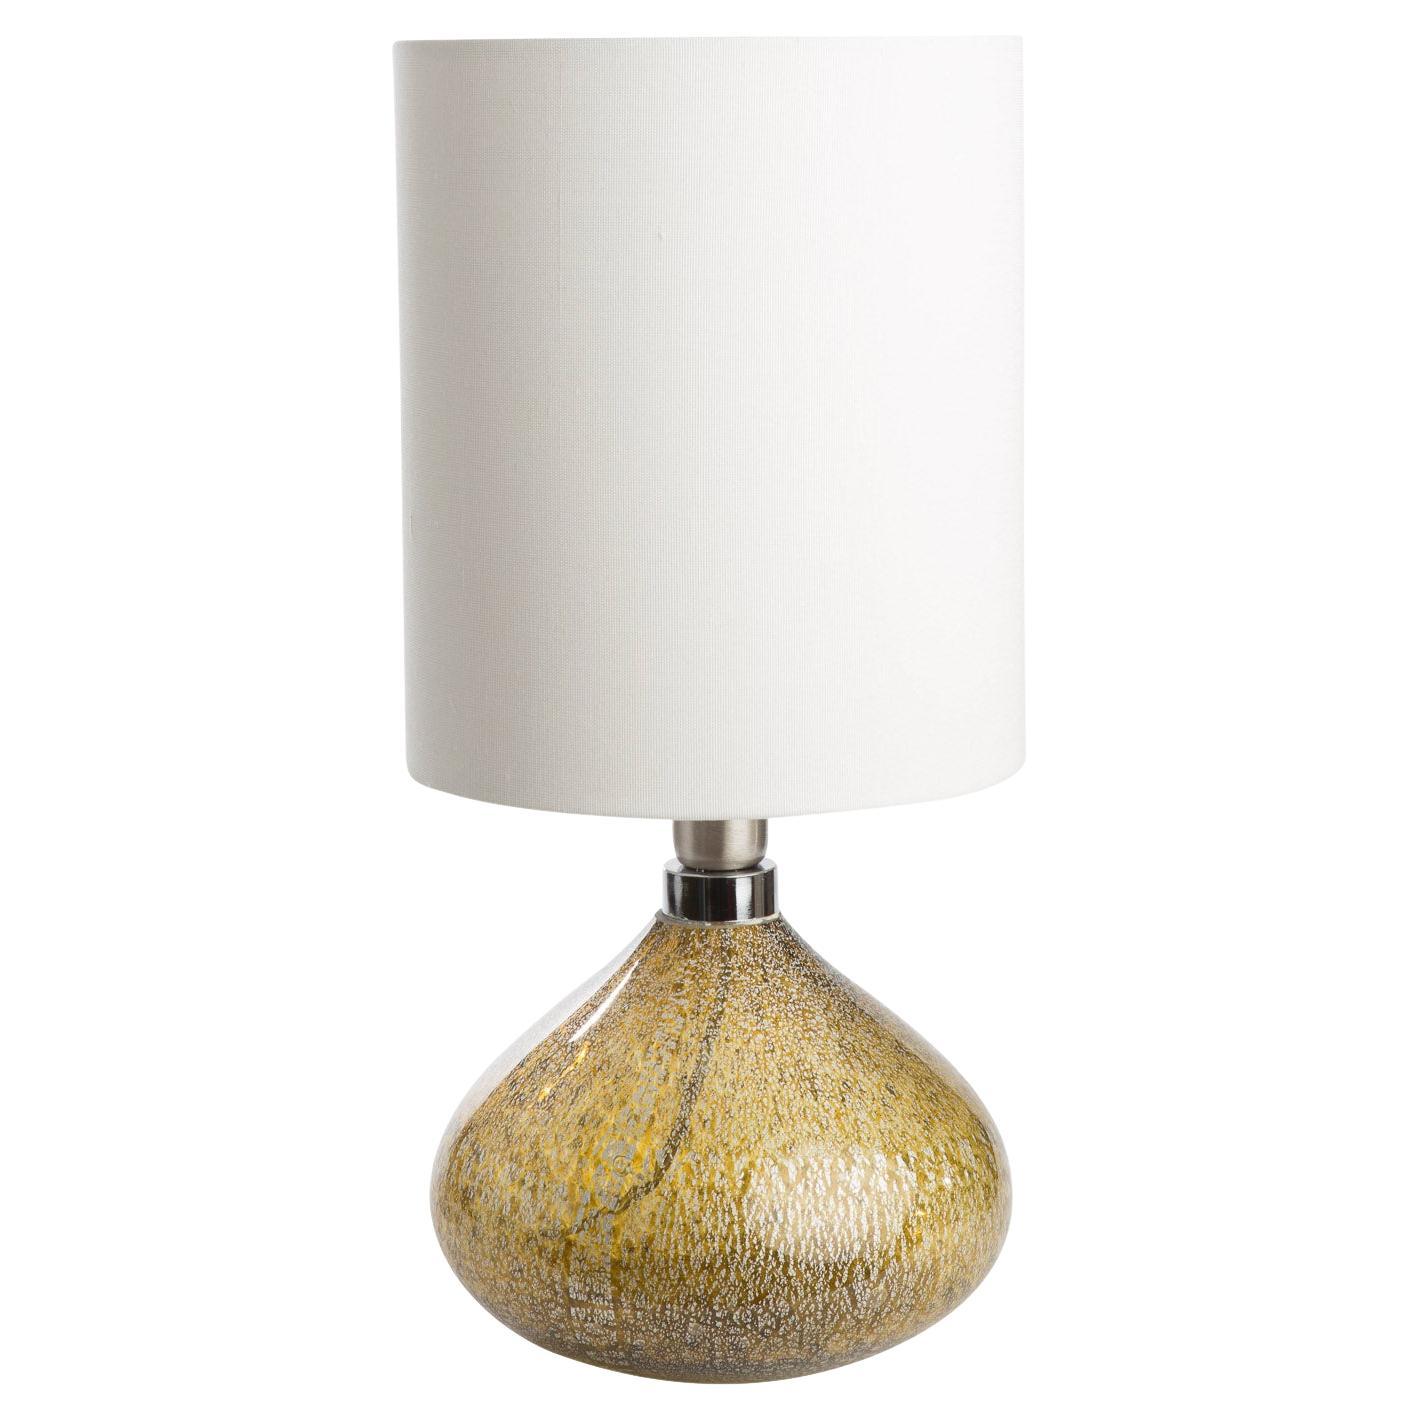 Il s'agit d'une paire de lampes de table uniques, totalement uniques, du célèbre fabricant de luminaires en verre de Murano, LAVAI.

Fabriqué en verre soufflé en forme de bulbe de tulipe (il est très difficile de souffler des pièces identiques de